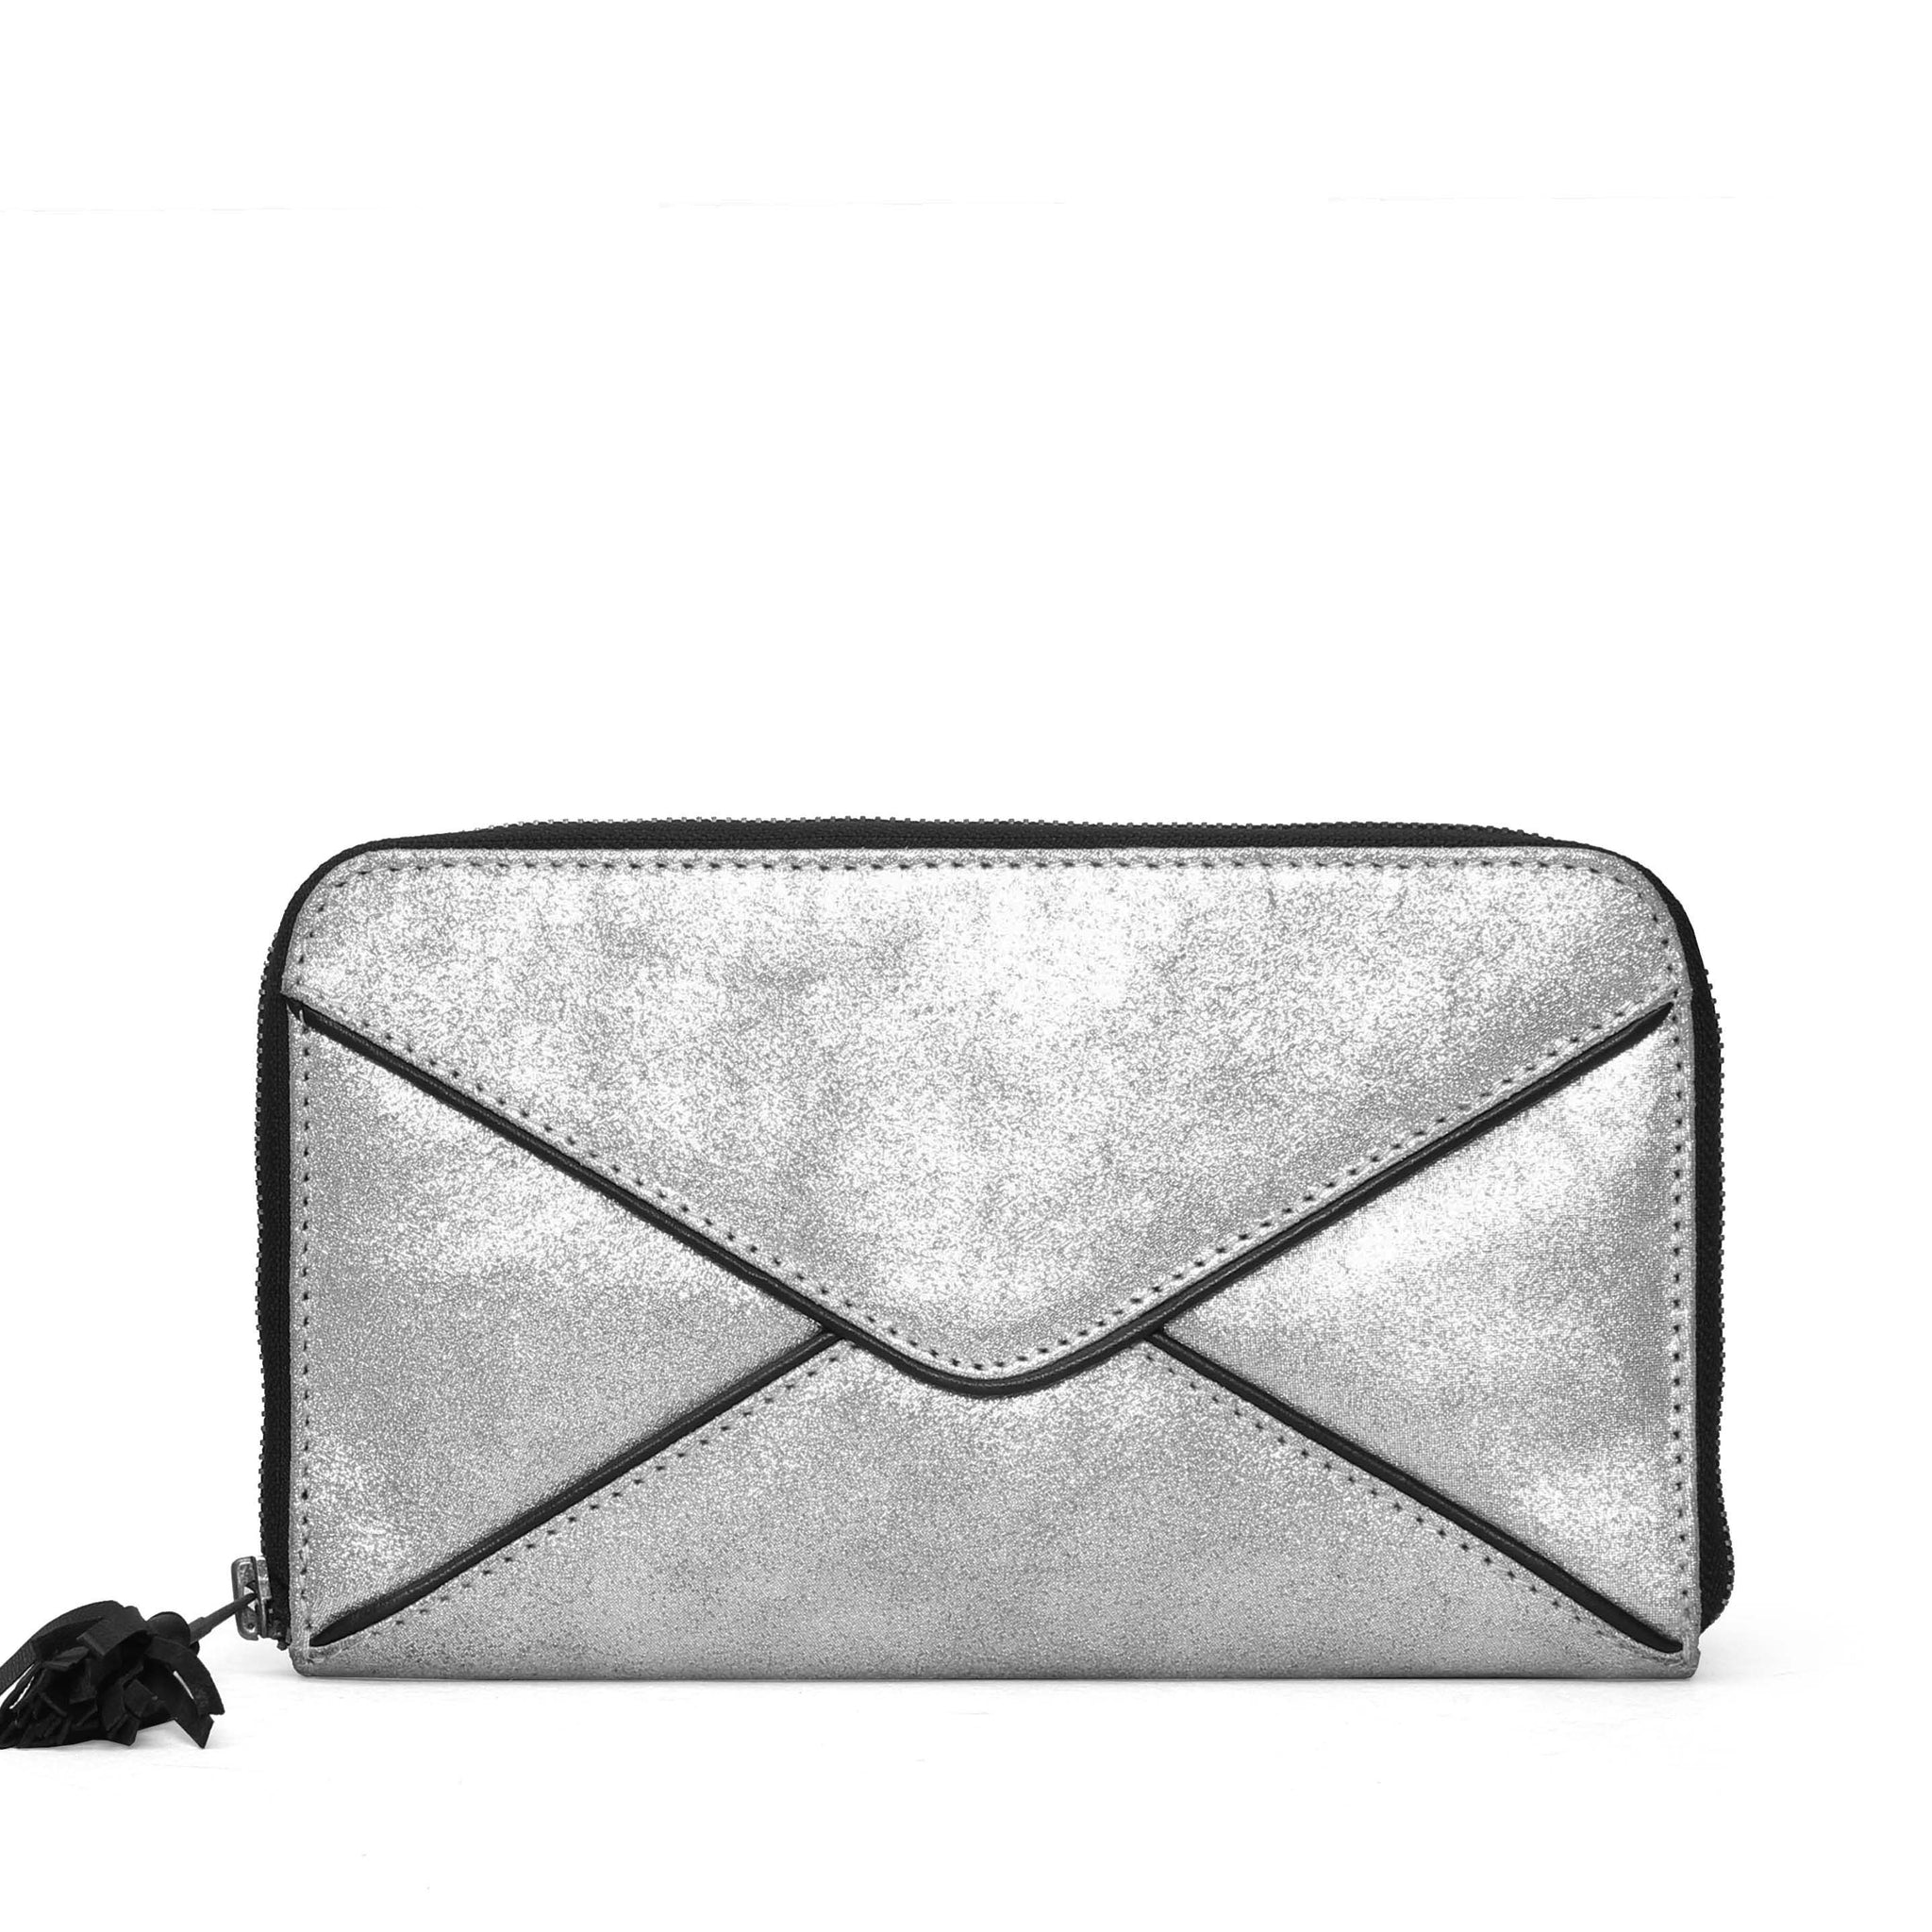 Women Clutch / Wallet In Shiny Silver Leather By Brune